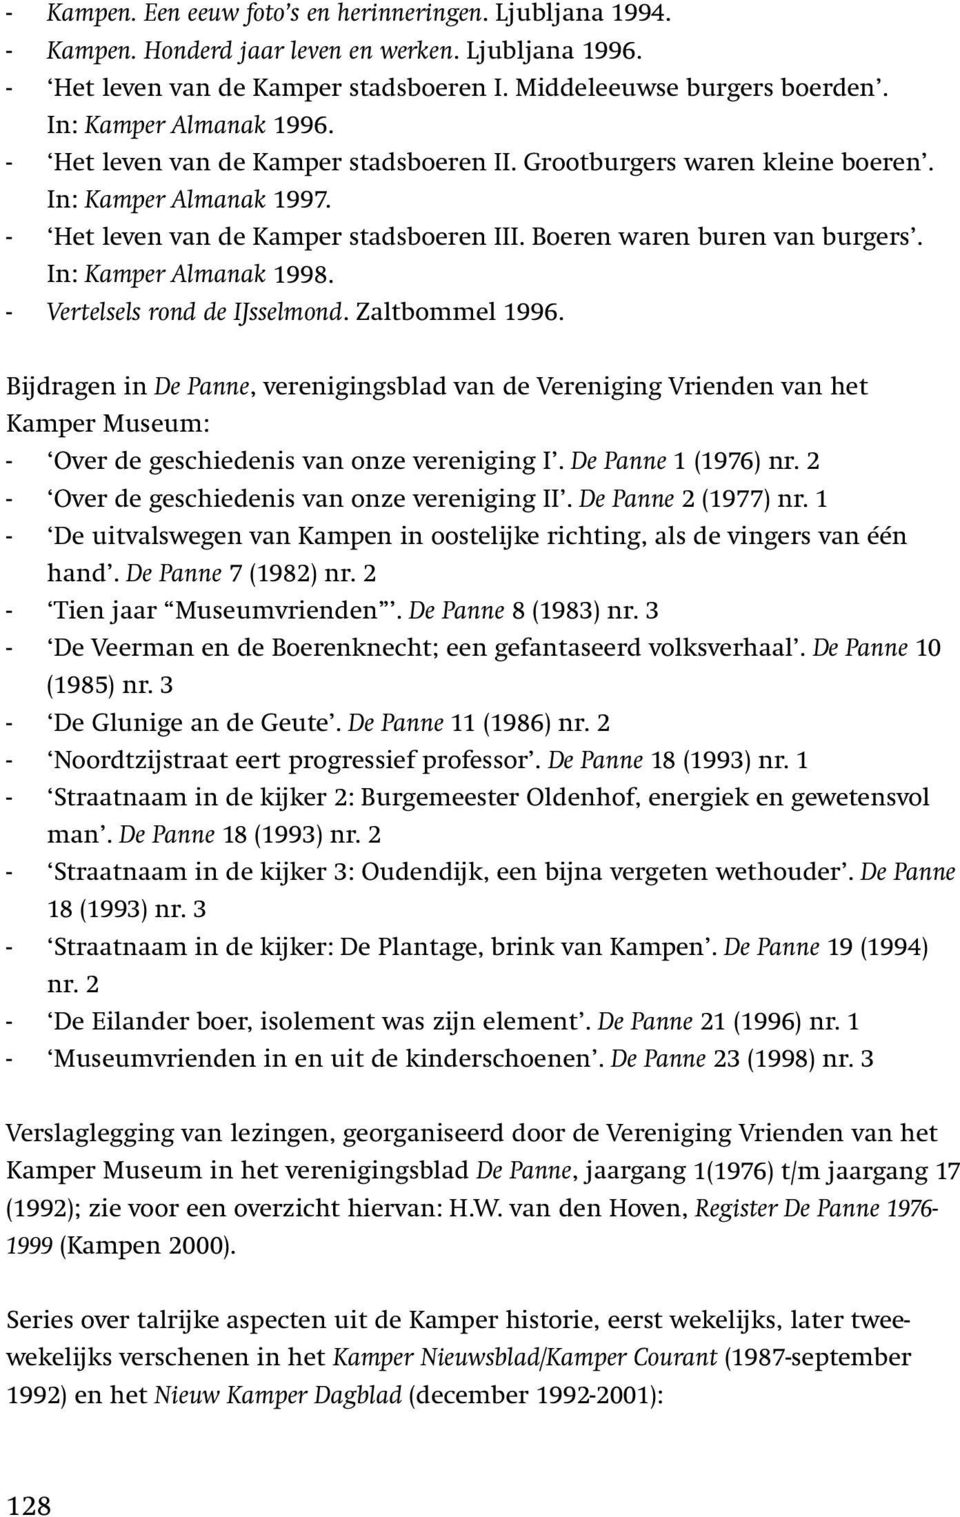 In: Kamper Almanak 1998. - Vertelsels rond de IJsselmond. Zaltbommel 1996.